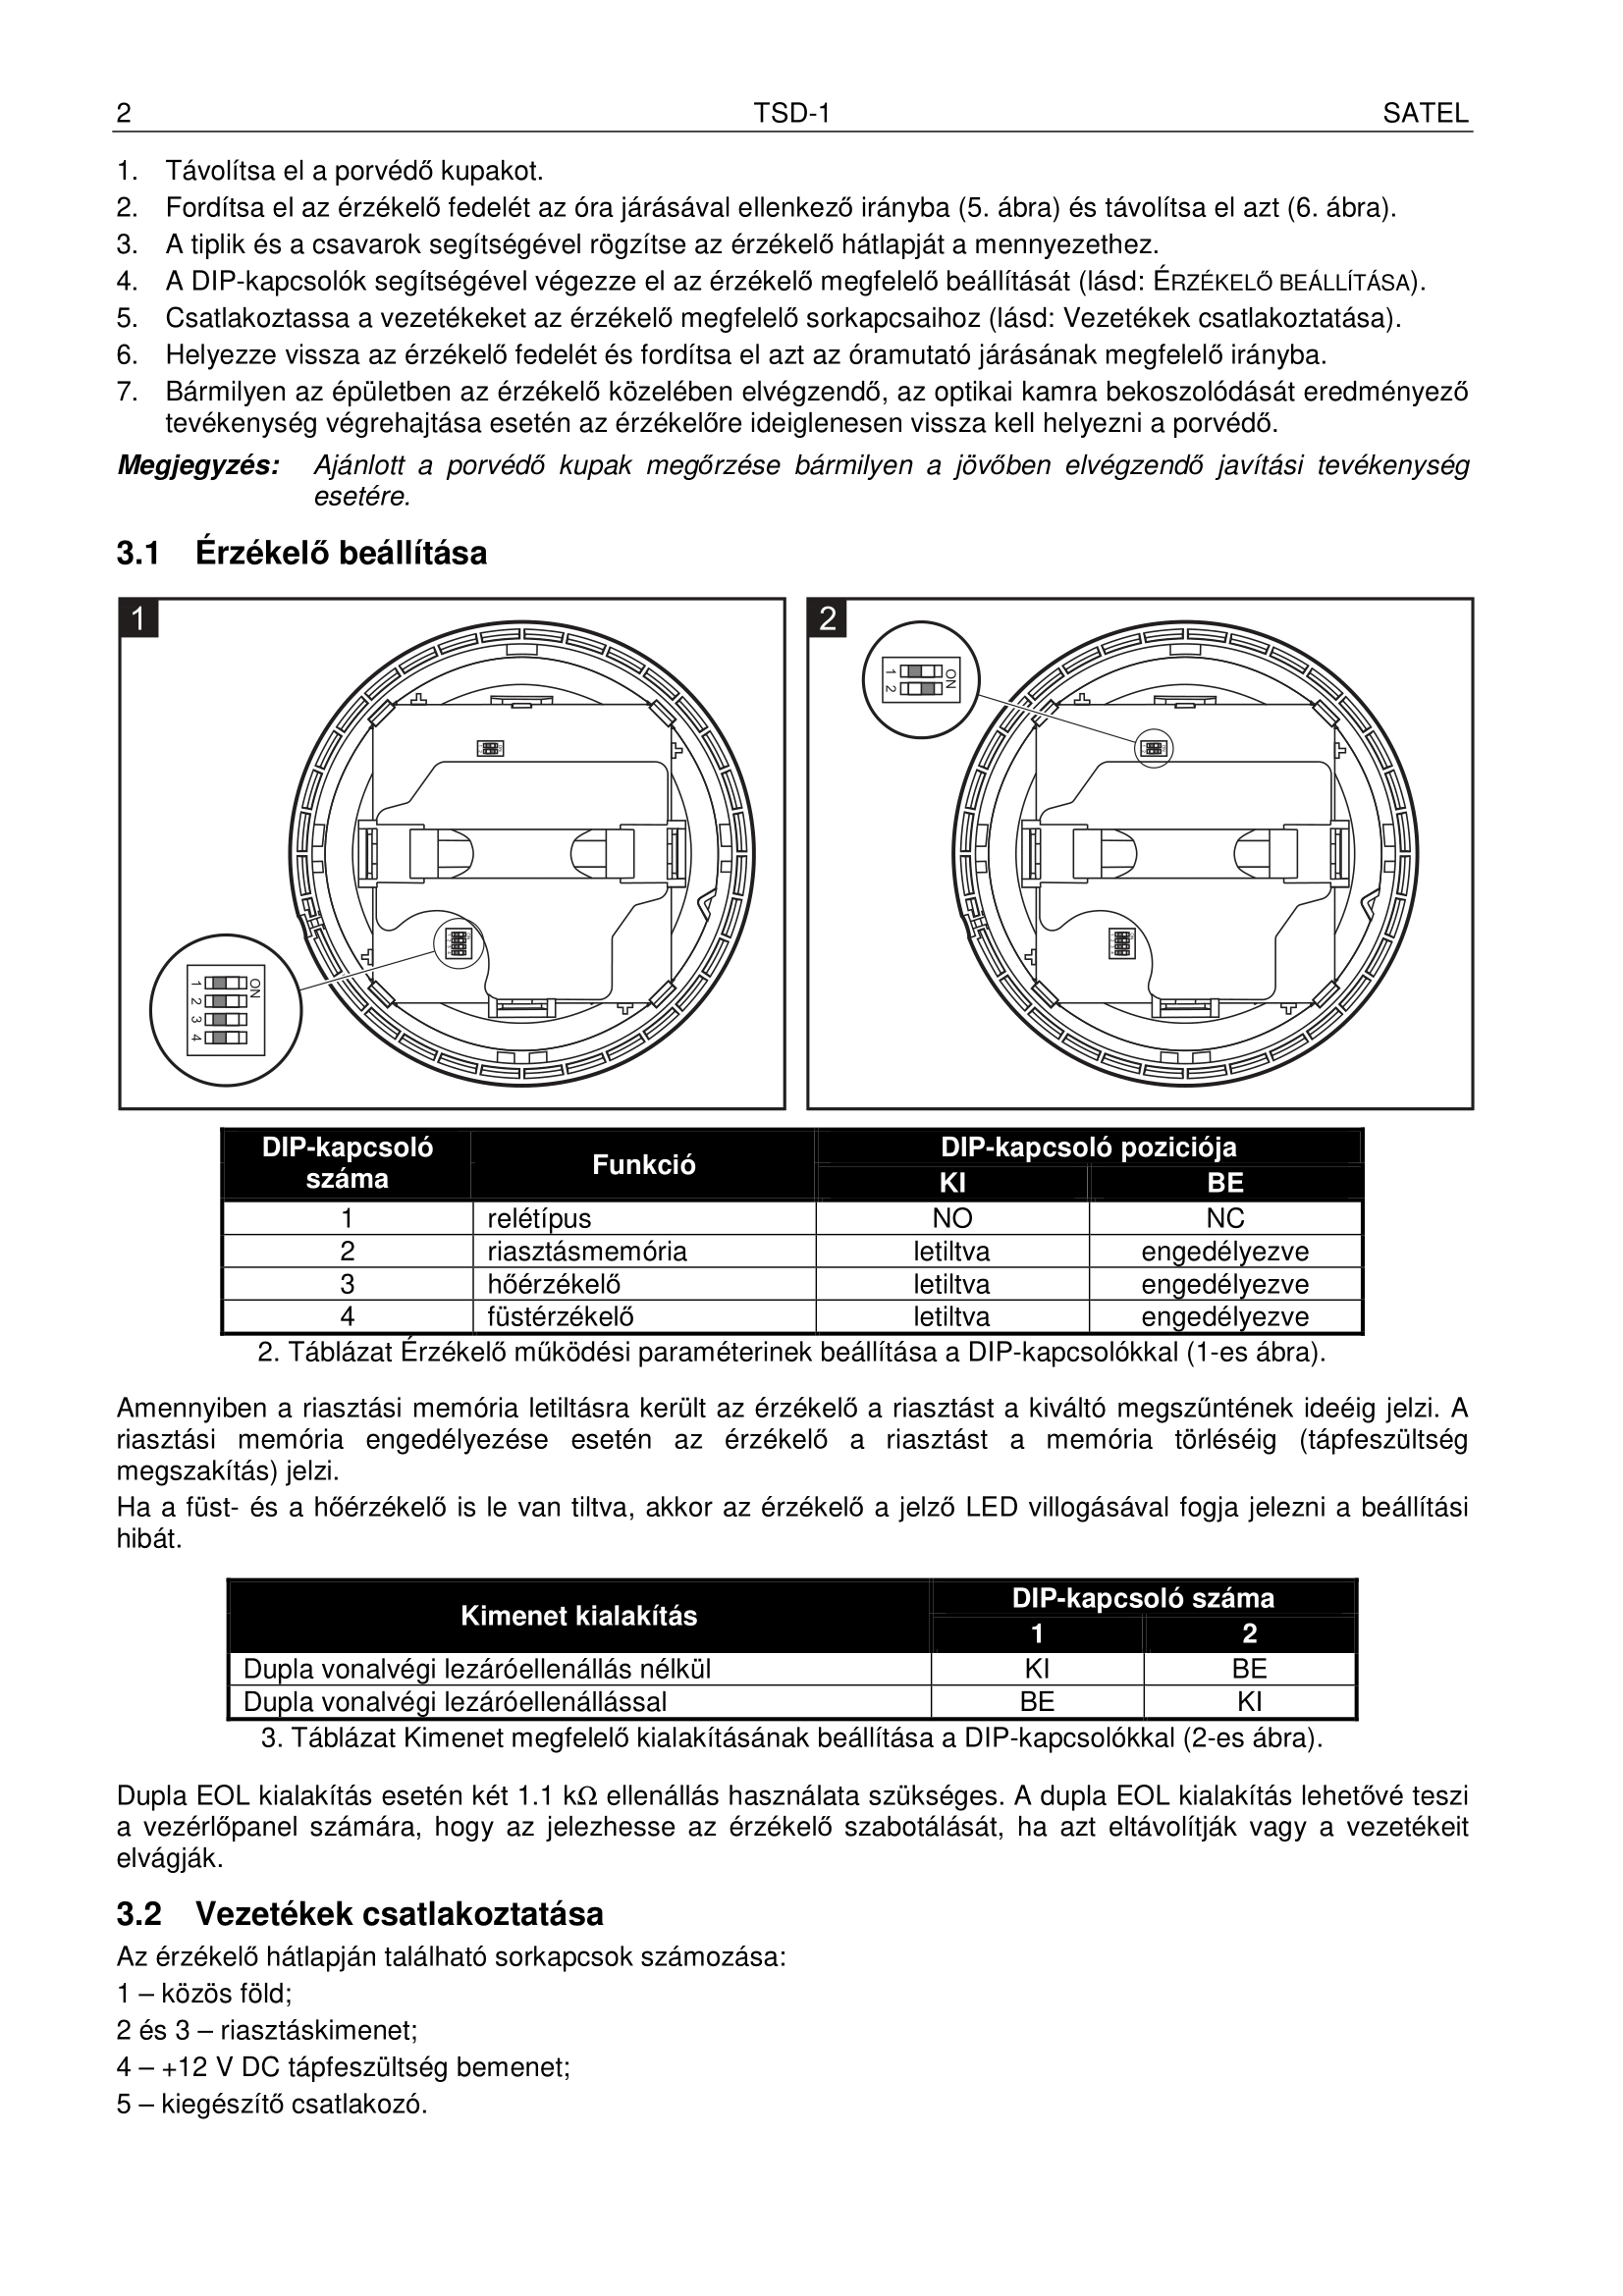 TSD-1 manual page2